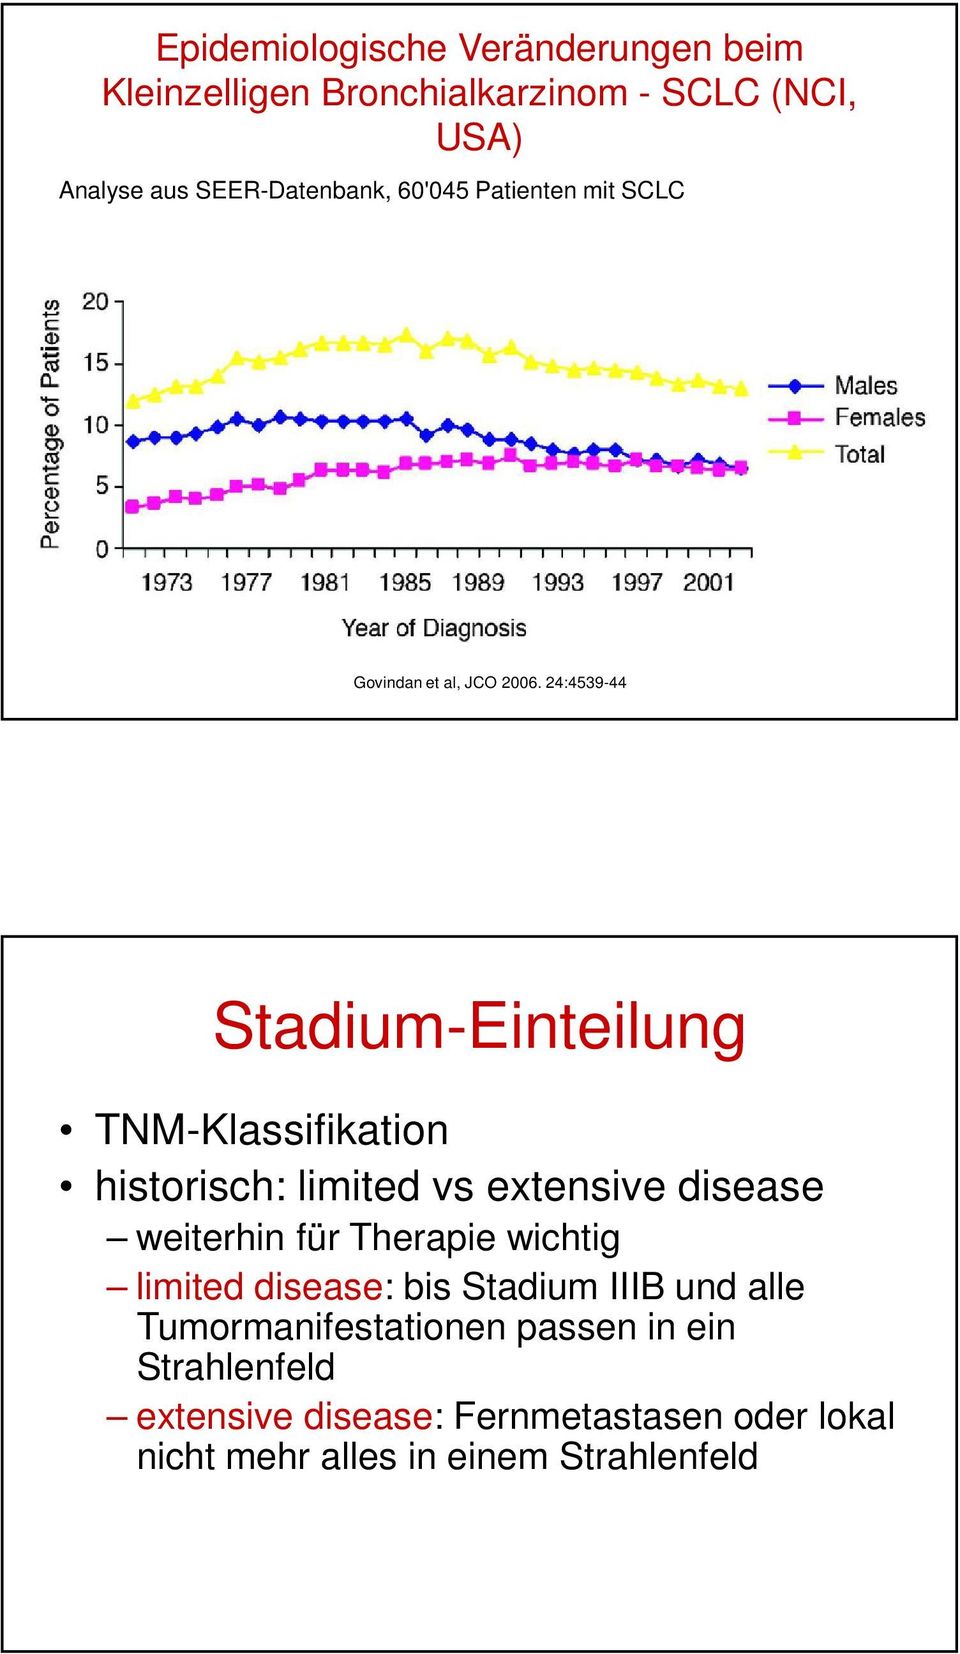 24:4539-44 Stadium-Einteilung TNM-Klassifikation historisch: limited vs extensive disease weiterhin für Therapie